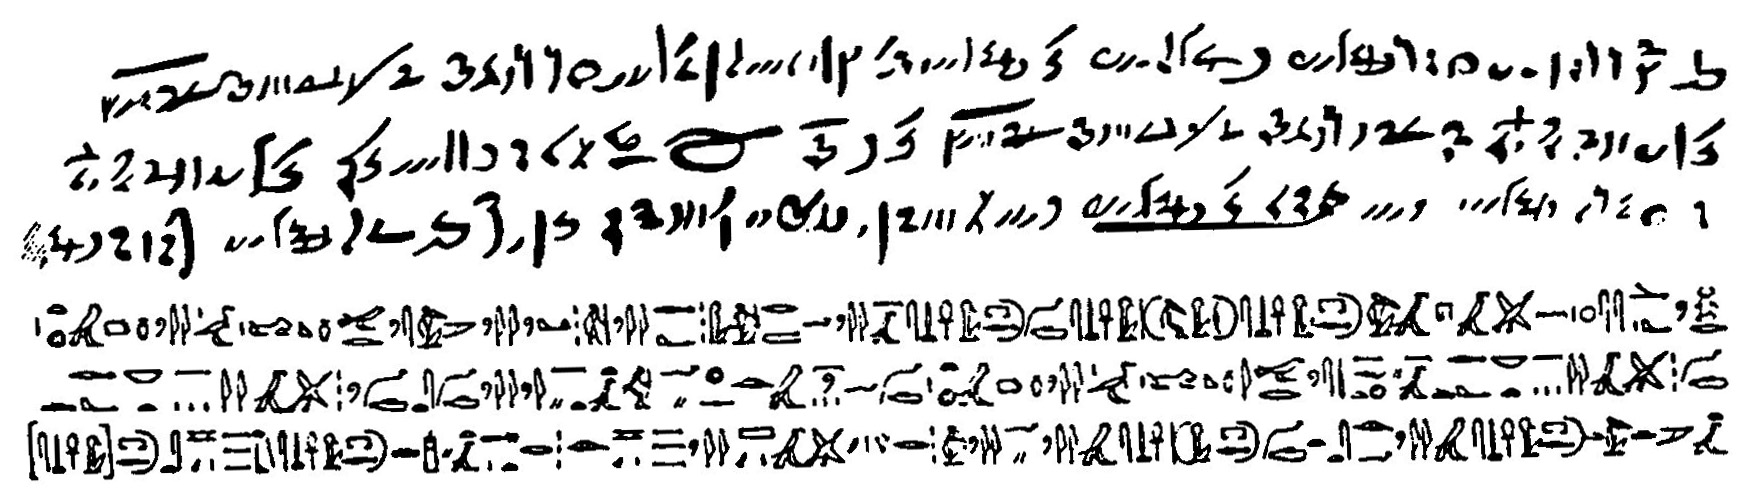 Démetické písmo ze 3. stol. př.